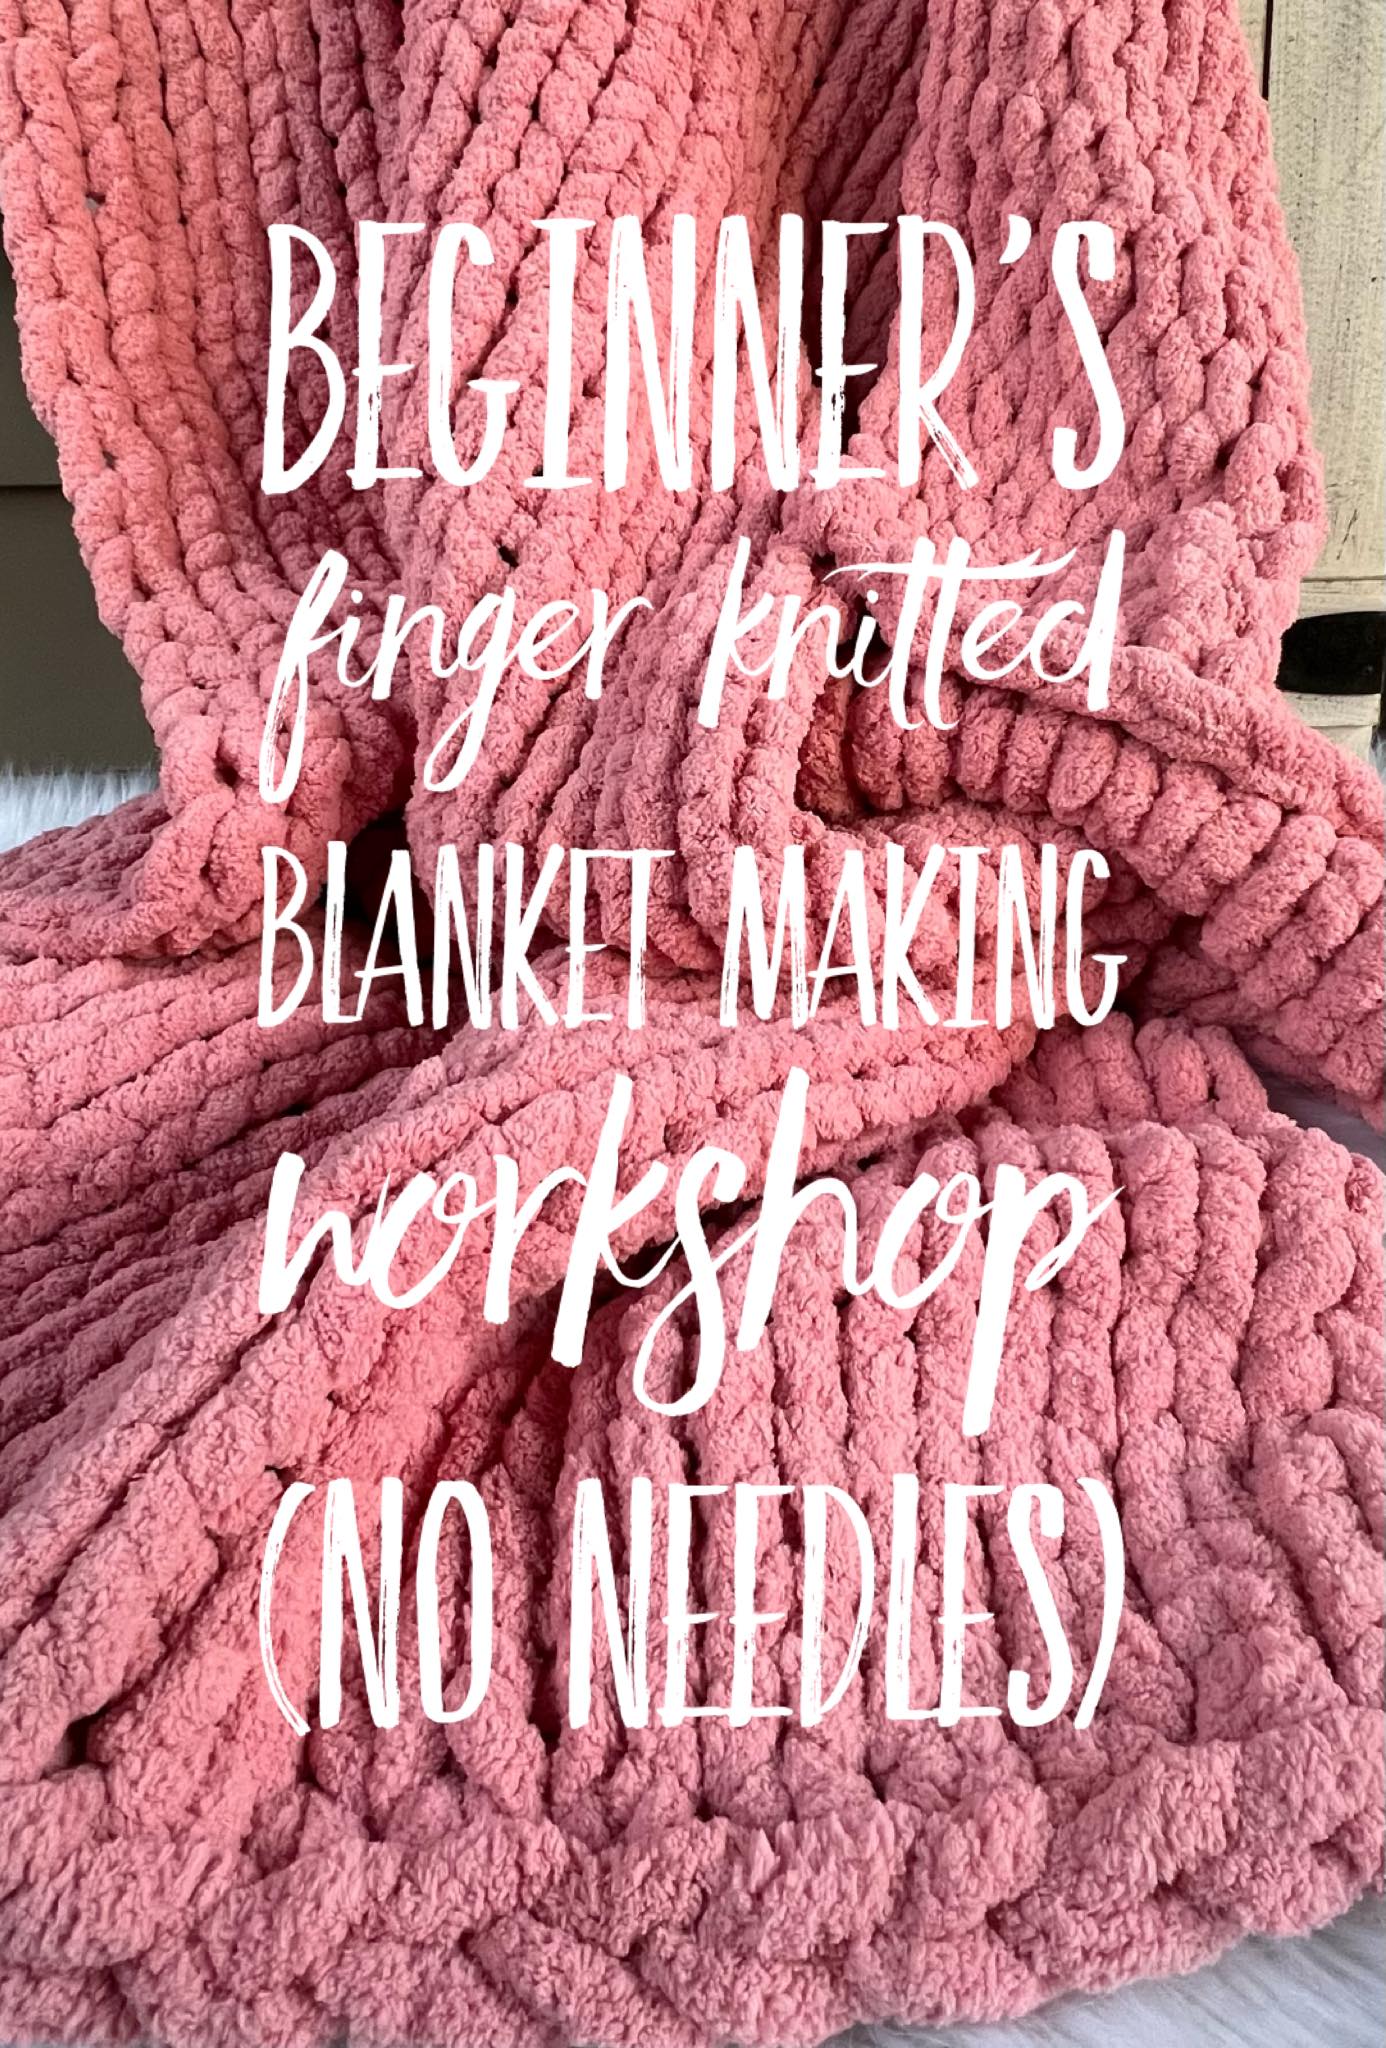 Beginner’s chunky yarn finger knitted blanket workshop 01/07 11:30am